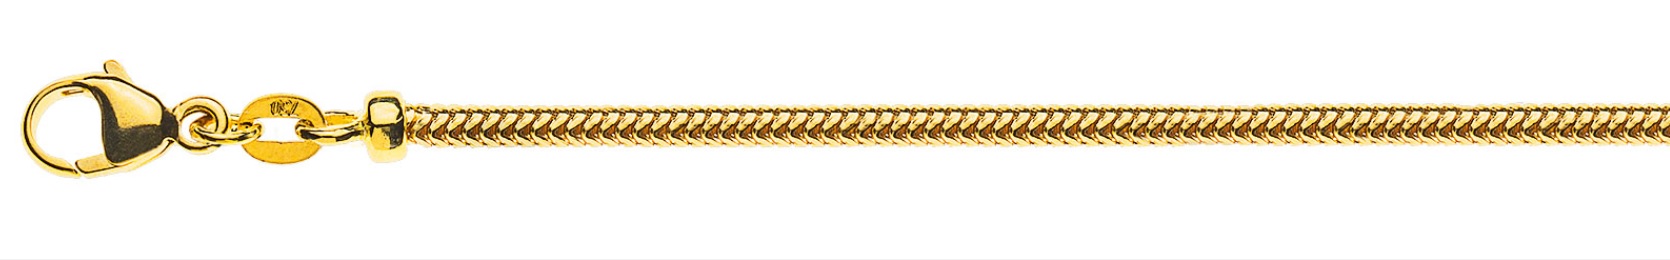 AURONOS Prestige Collier en or jaune 18K chaîne serpent 42cm 2.4mm